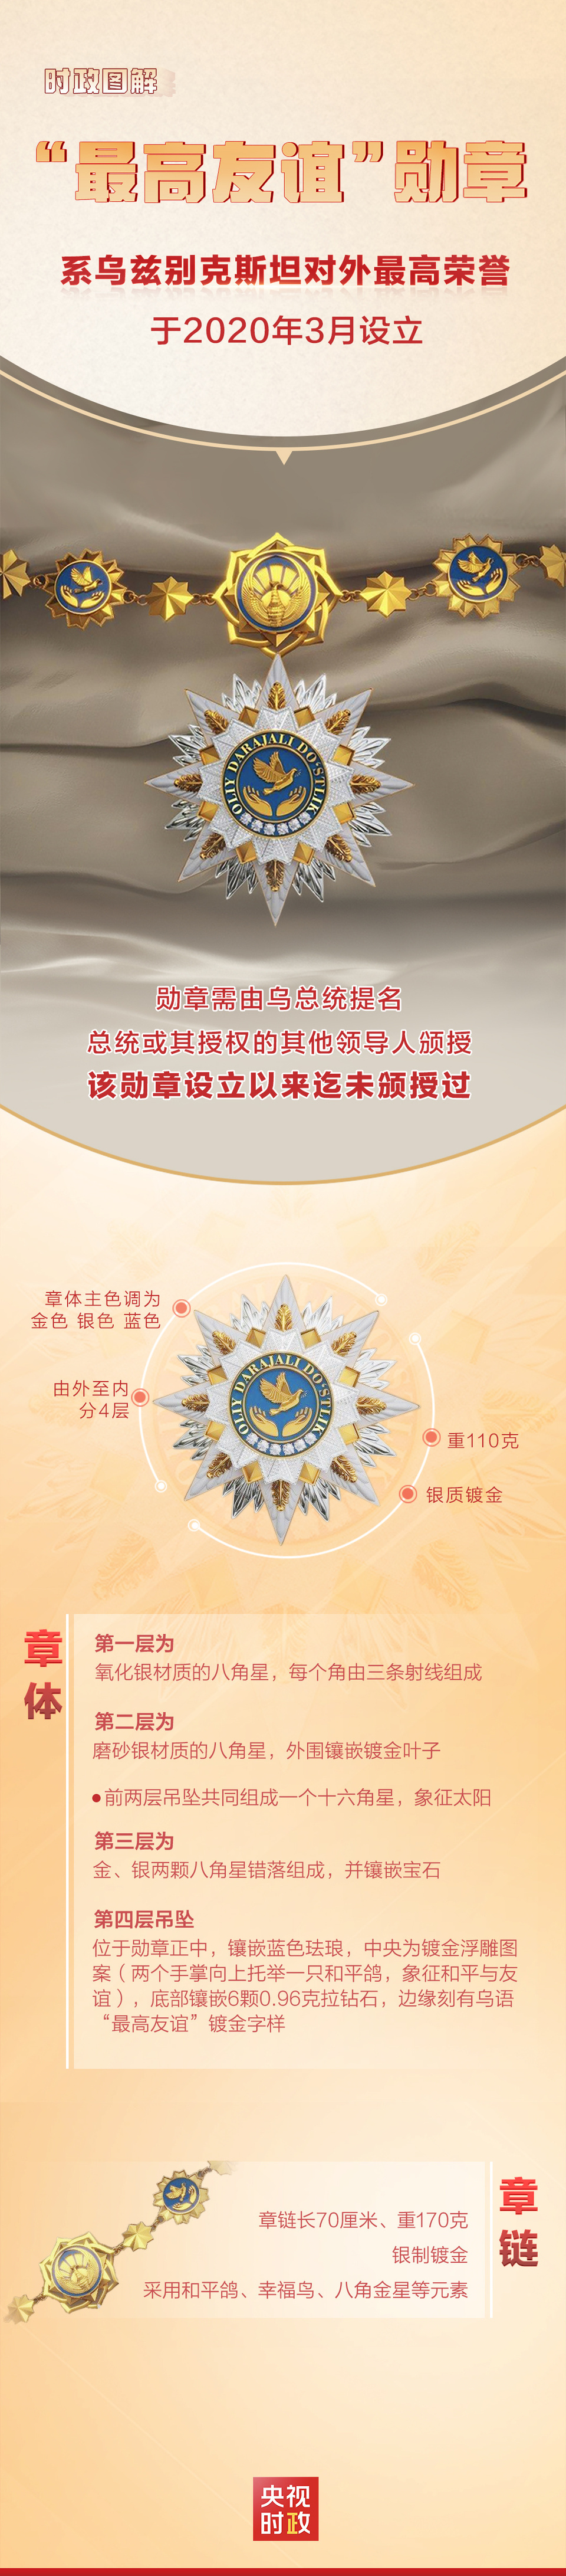 时政图解丨揭秘！乌兹别克斯坦首枚“最高友谊”勋章插图